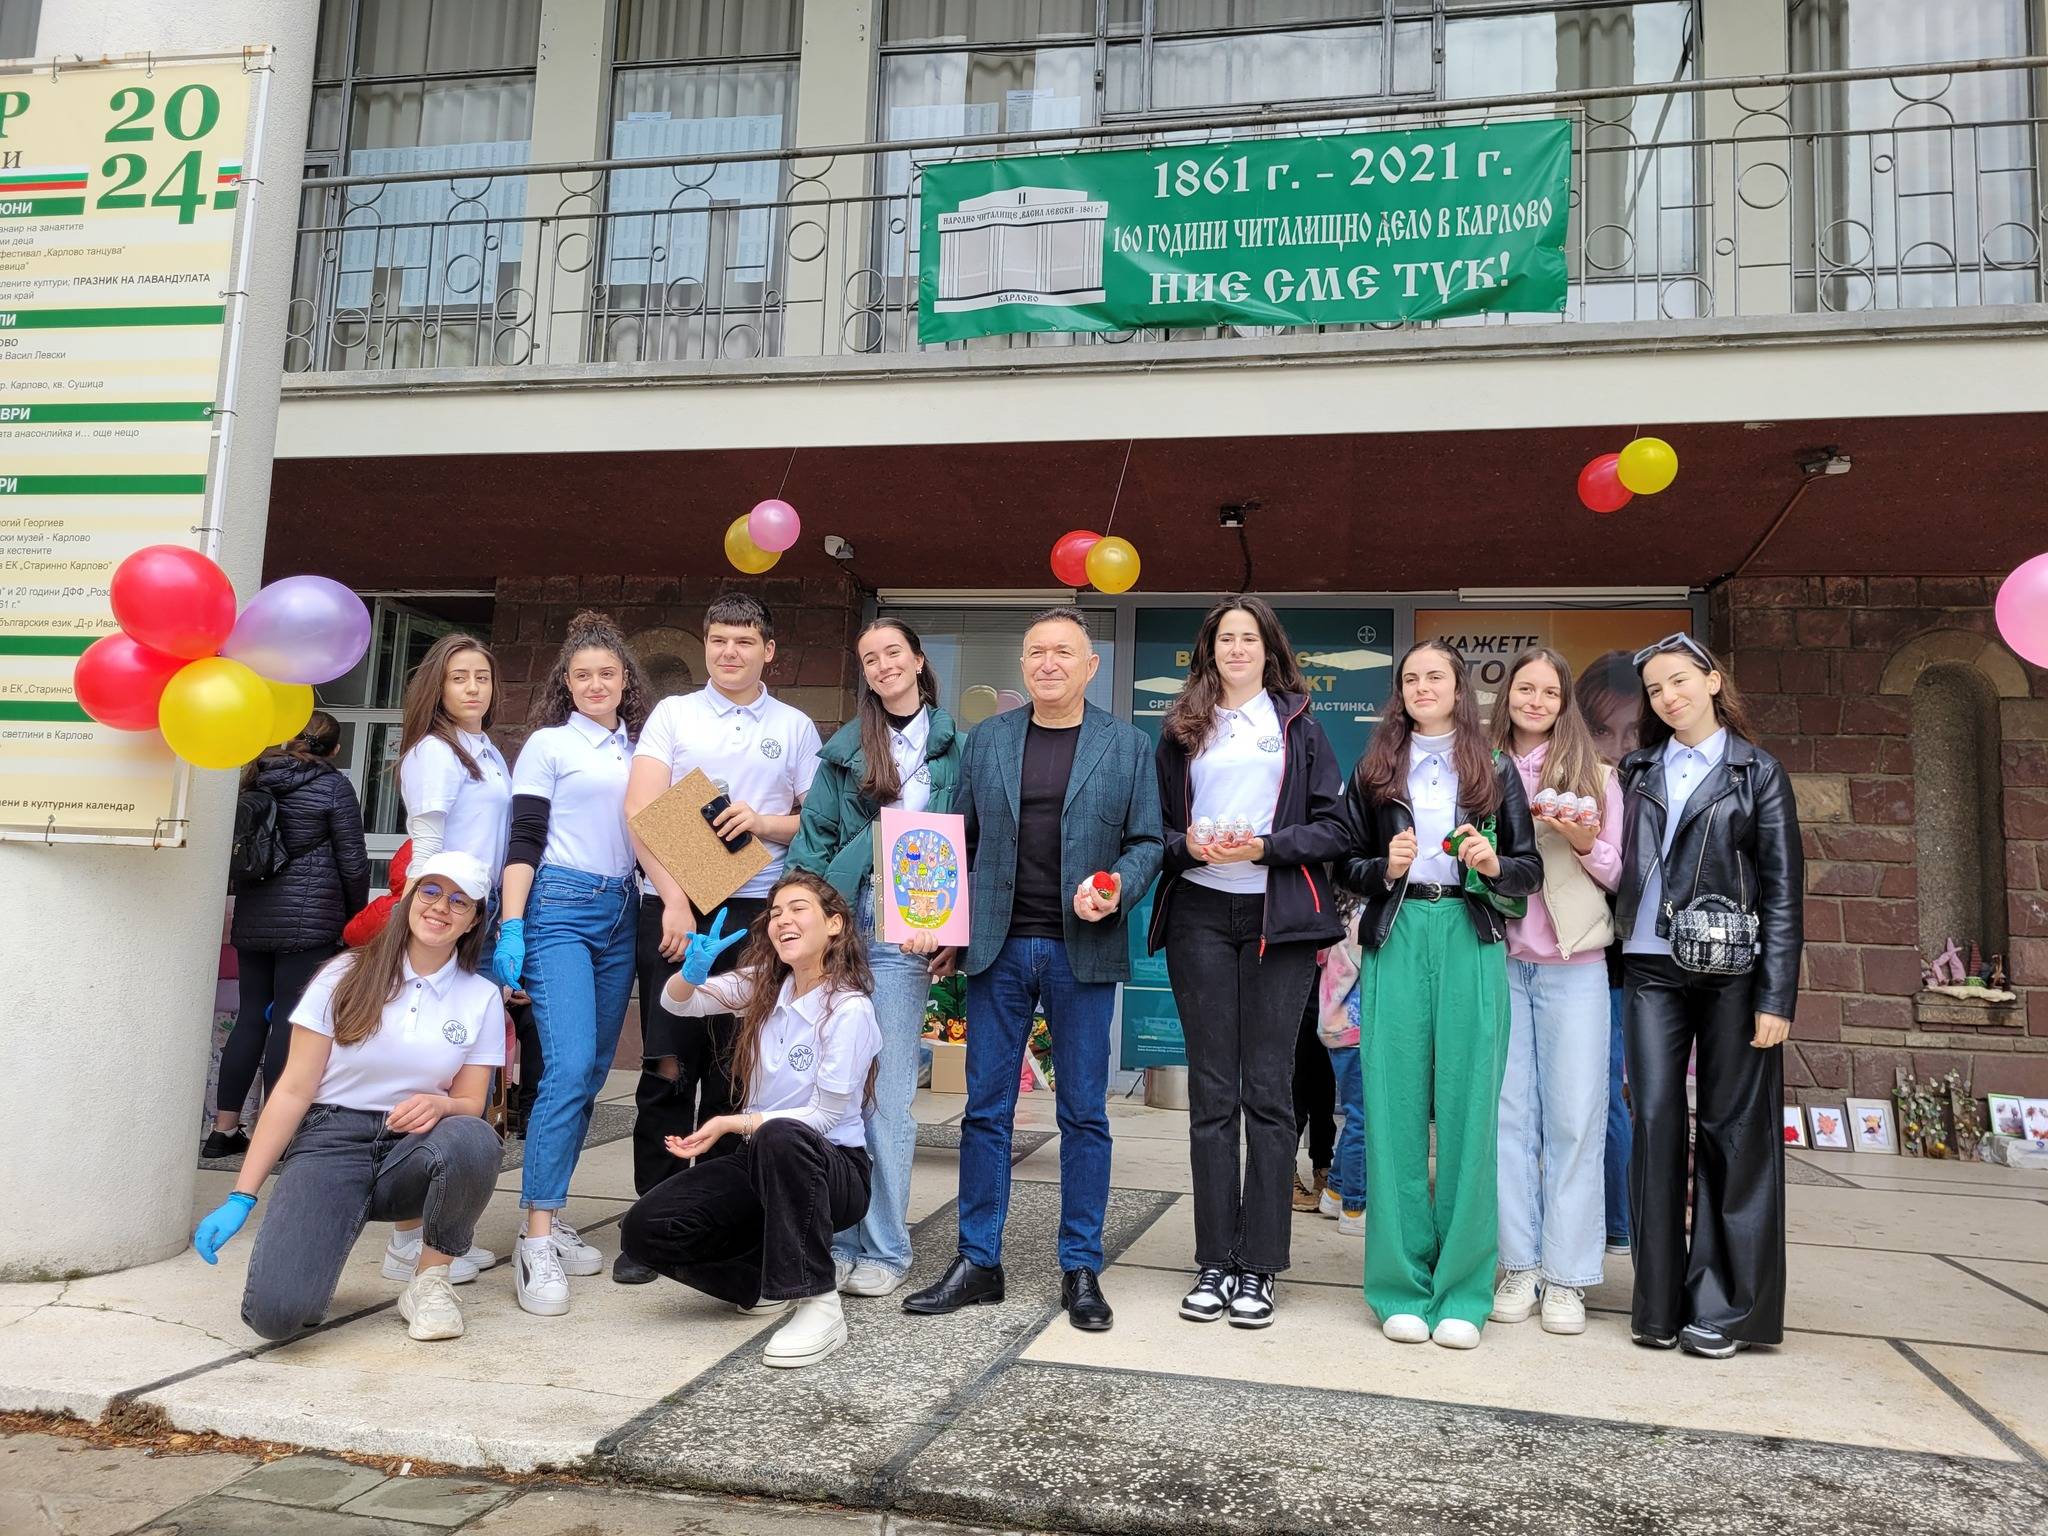  Кметът на Общината д-р Емил Кабаиванов посрещна децата, които участваха във Великденското тържество